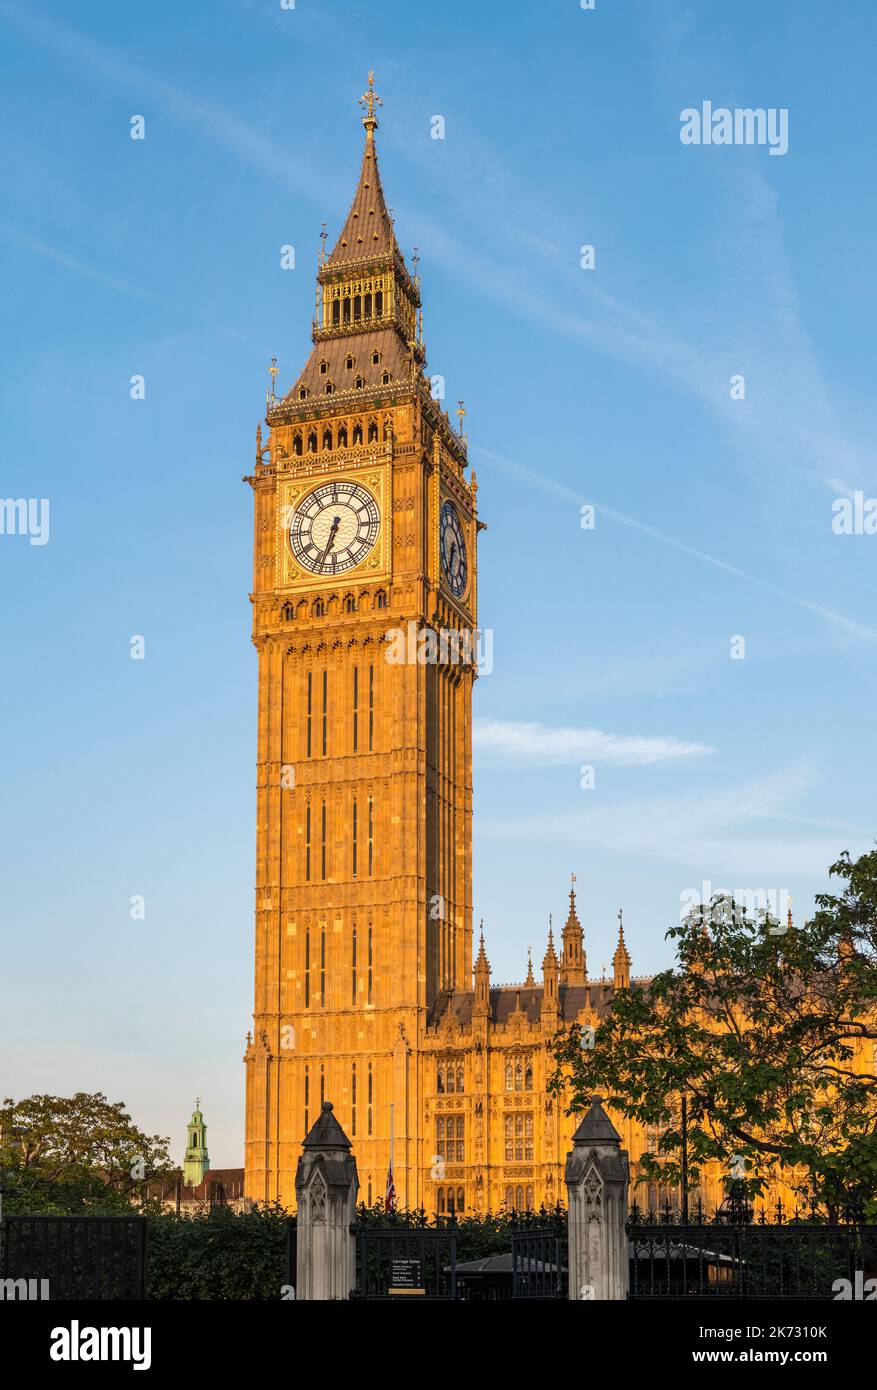 La tour de 96m heures de Big Ben (la tour Elizabeth), qui fait partie du Palais de Westminster, après ses 4 dernières années de rénovation, à la lumière de la fin de la soirée Banque D'Images